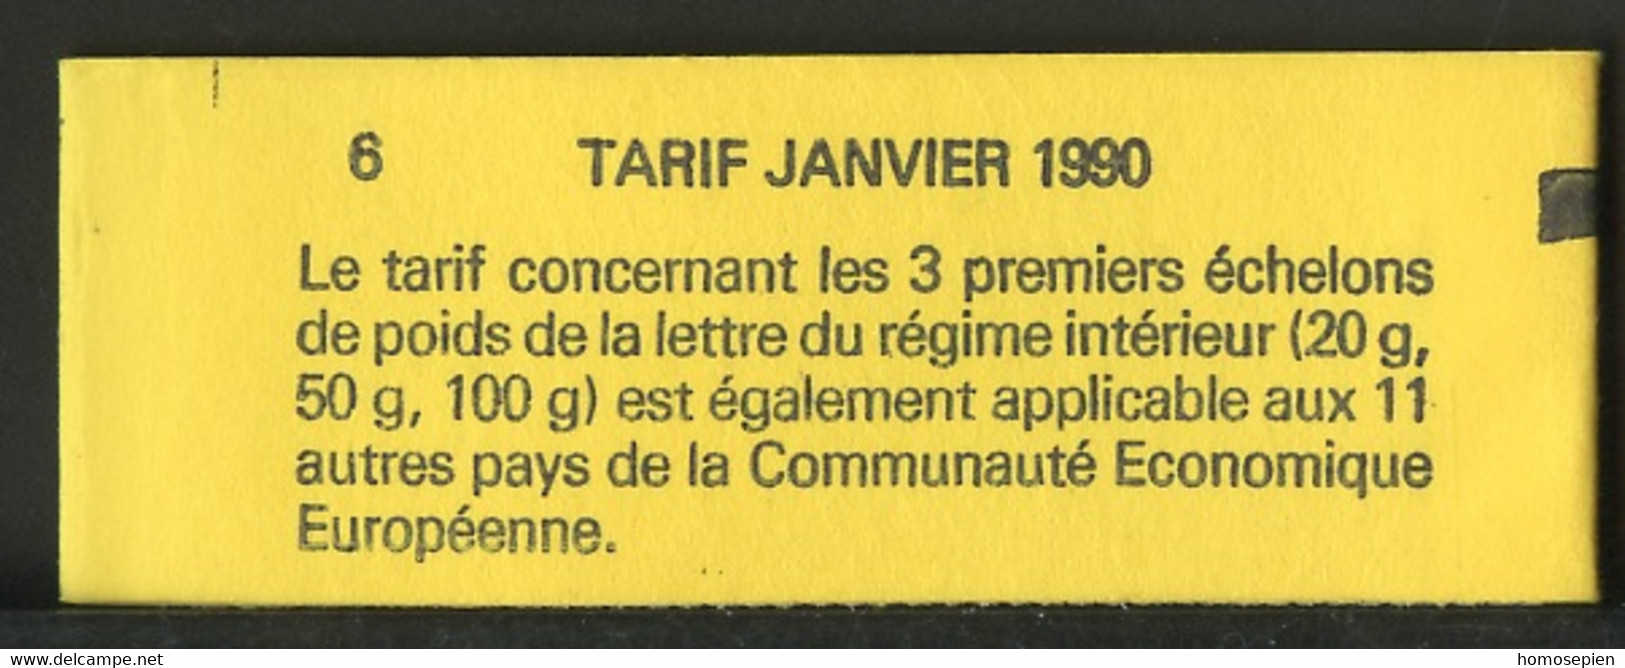 France - Frankreich Carnet 1990 Y&T N°CUC2614-C1A - Michel N°MH2751A*10 *** - 2,30f Marianne De Briat "la Réservation" - Modernes : 1959-...